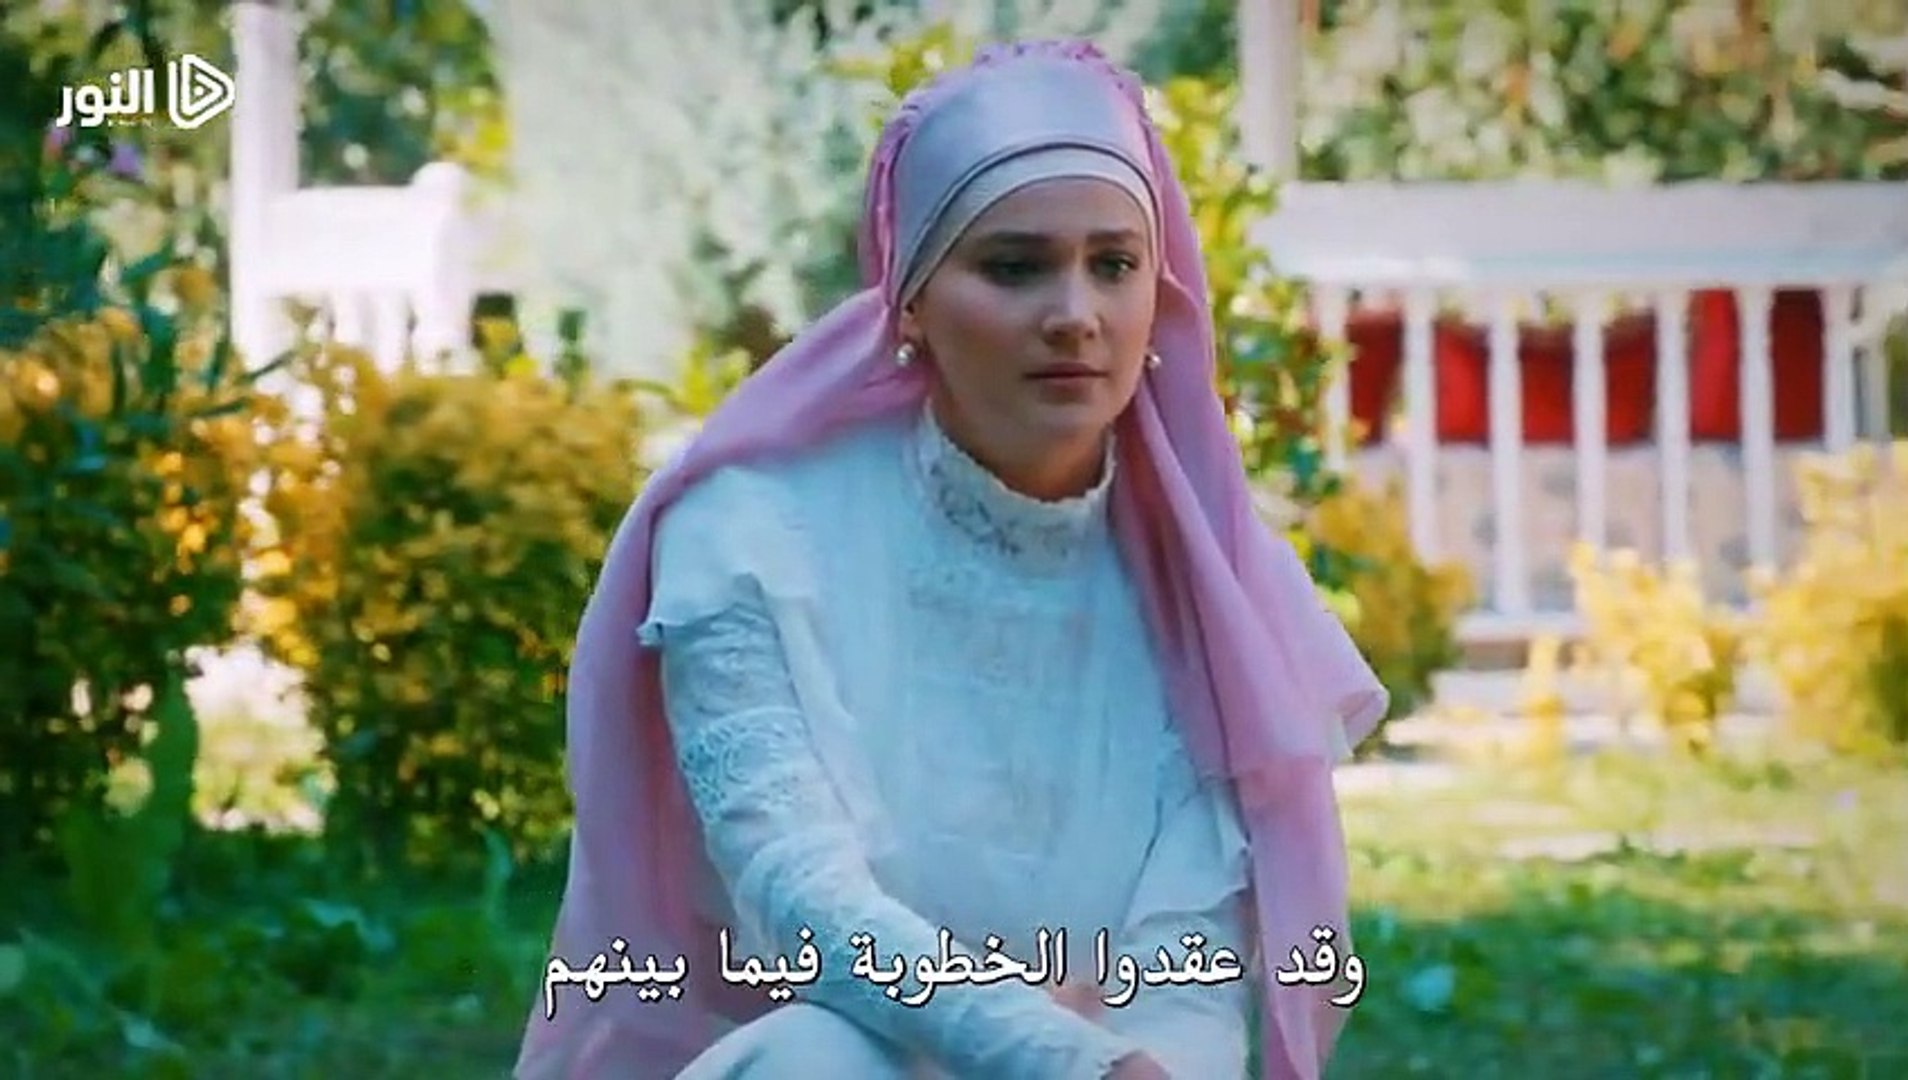 الحلقة 93 مسلسل السلطان عبد الحميد الثاني مترجمة للعربية القسم الأول Video Dailymotion